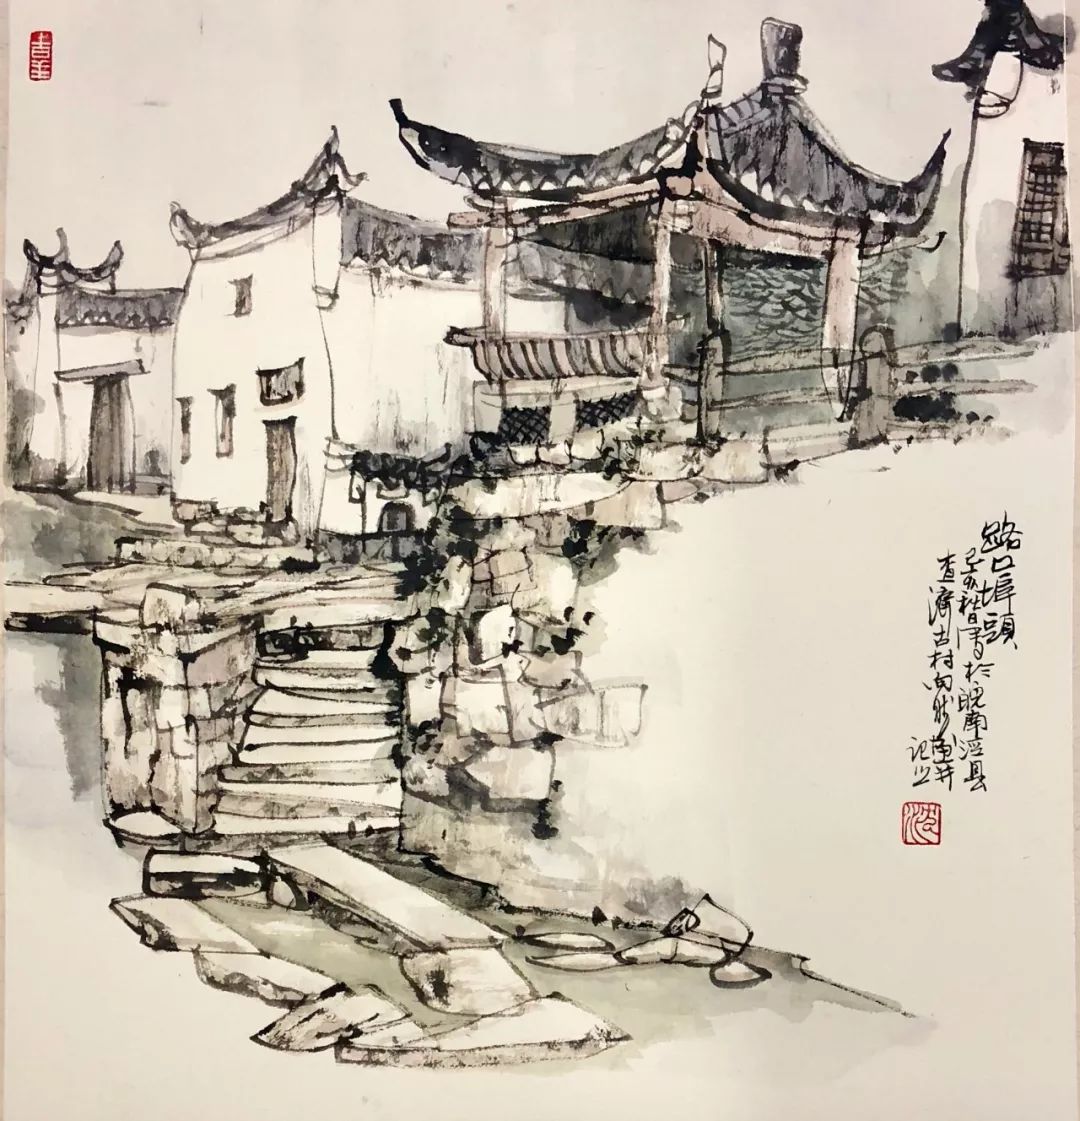 原创「艺术中国」—— 沈向然个人画集